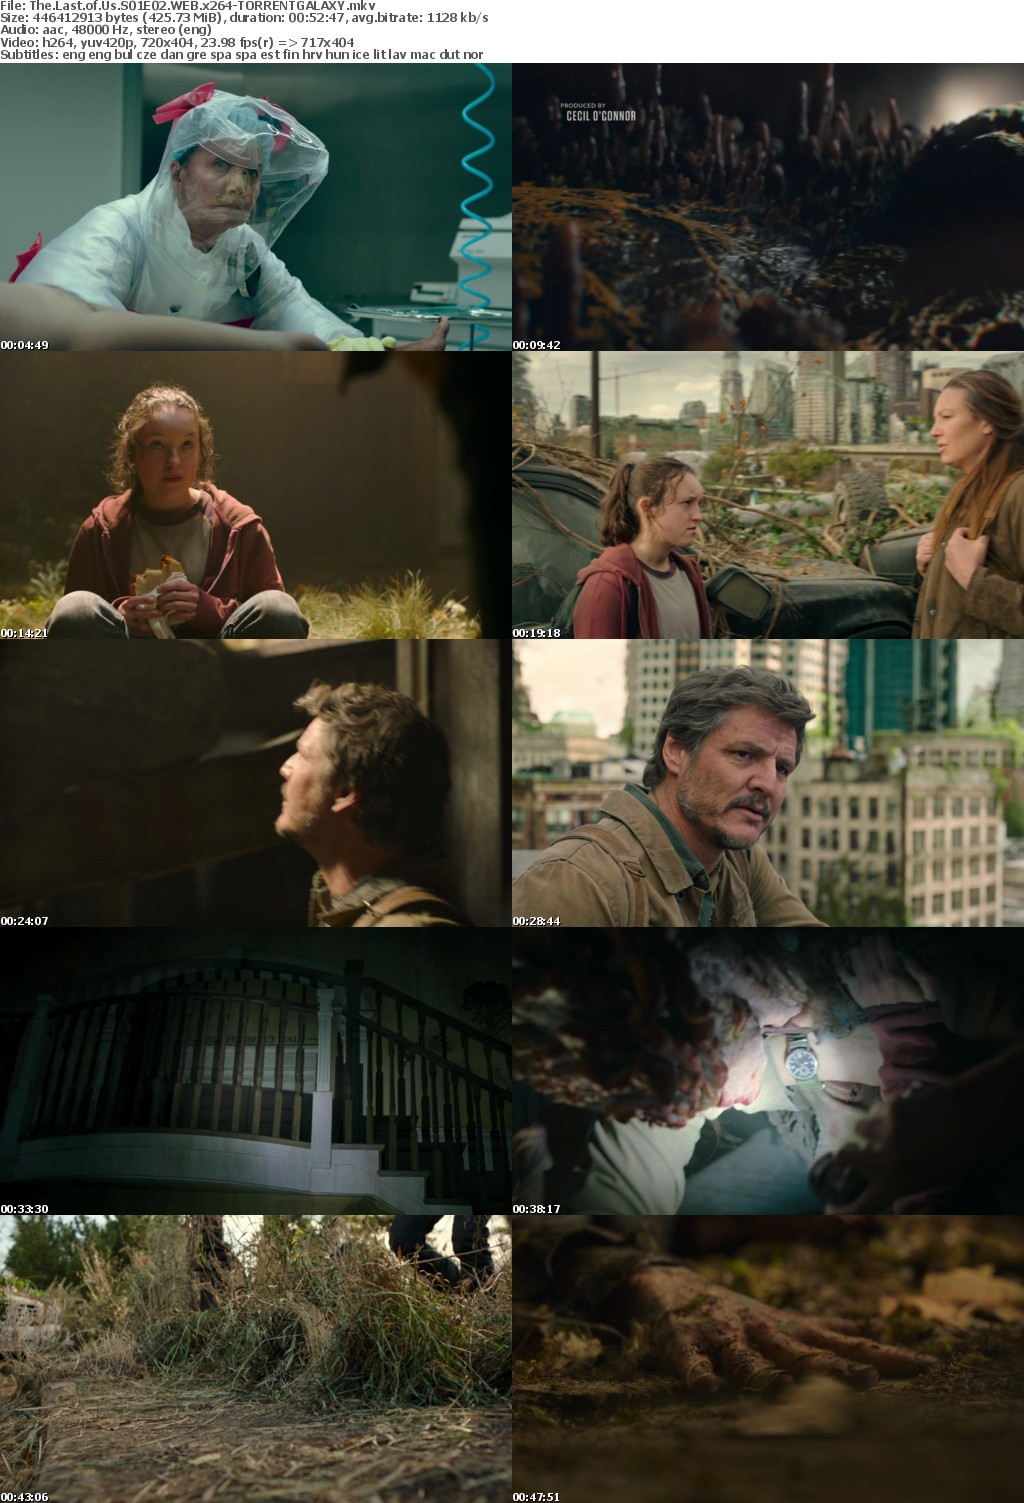 The Last of Us S01E02 WEB x264-GALAXY